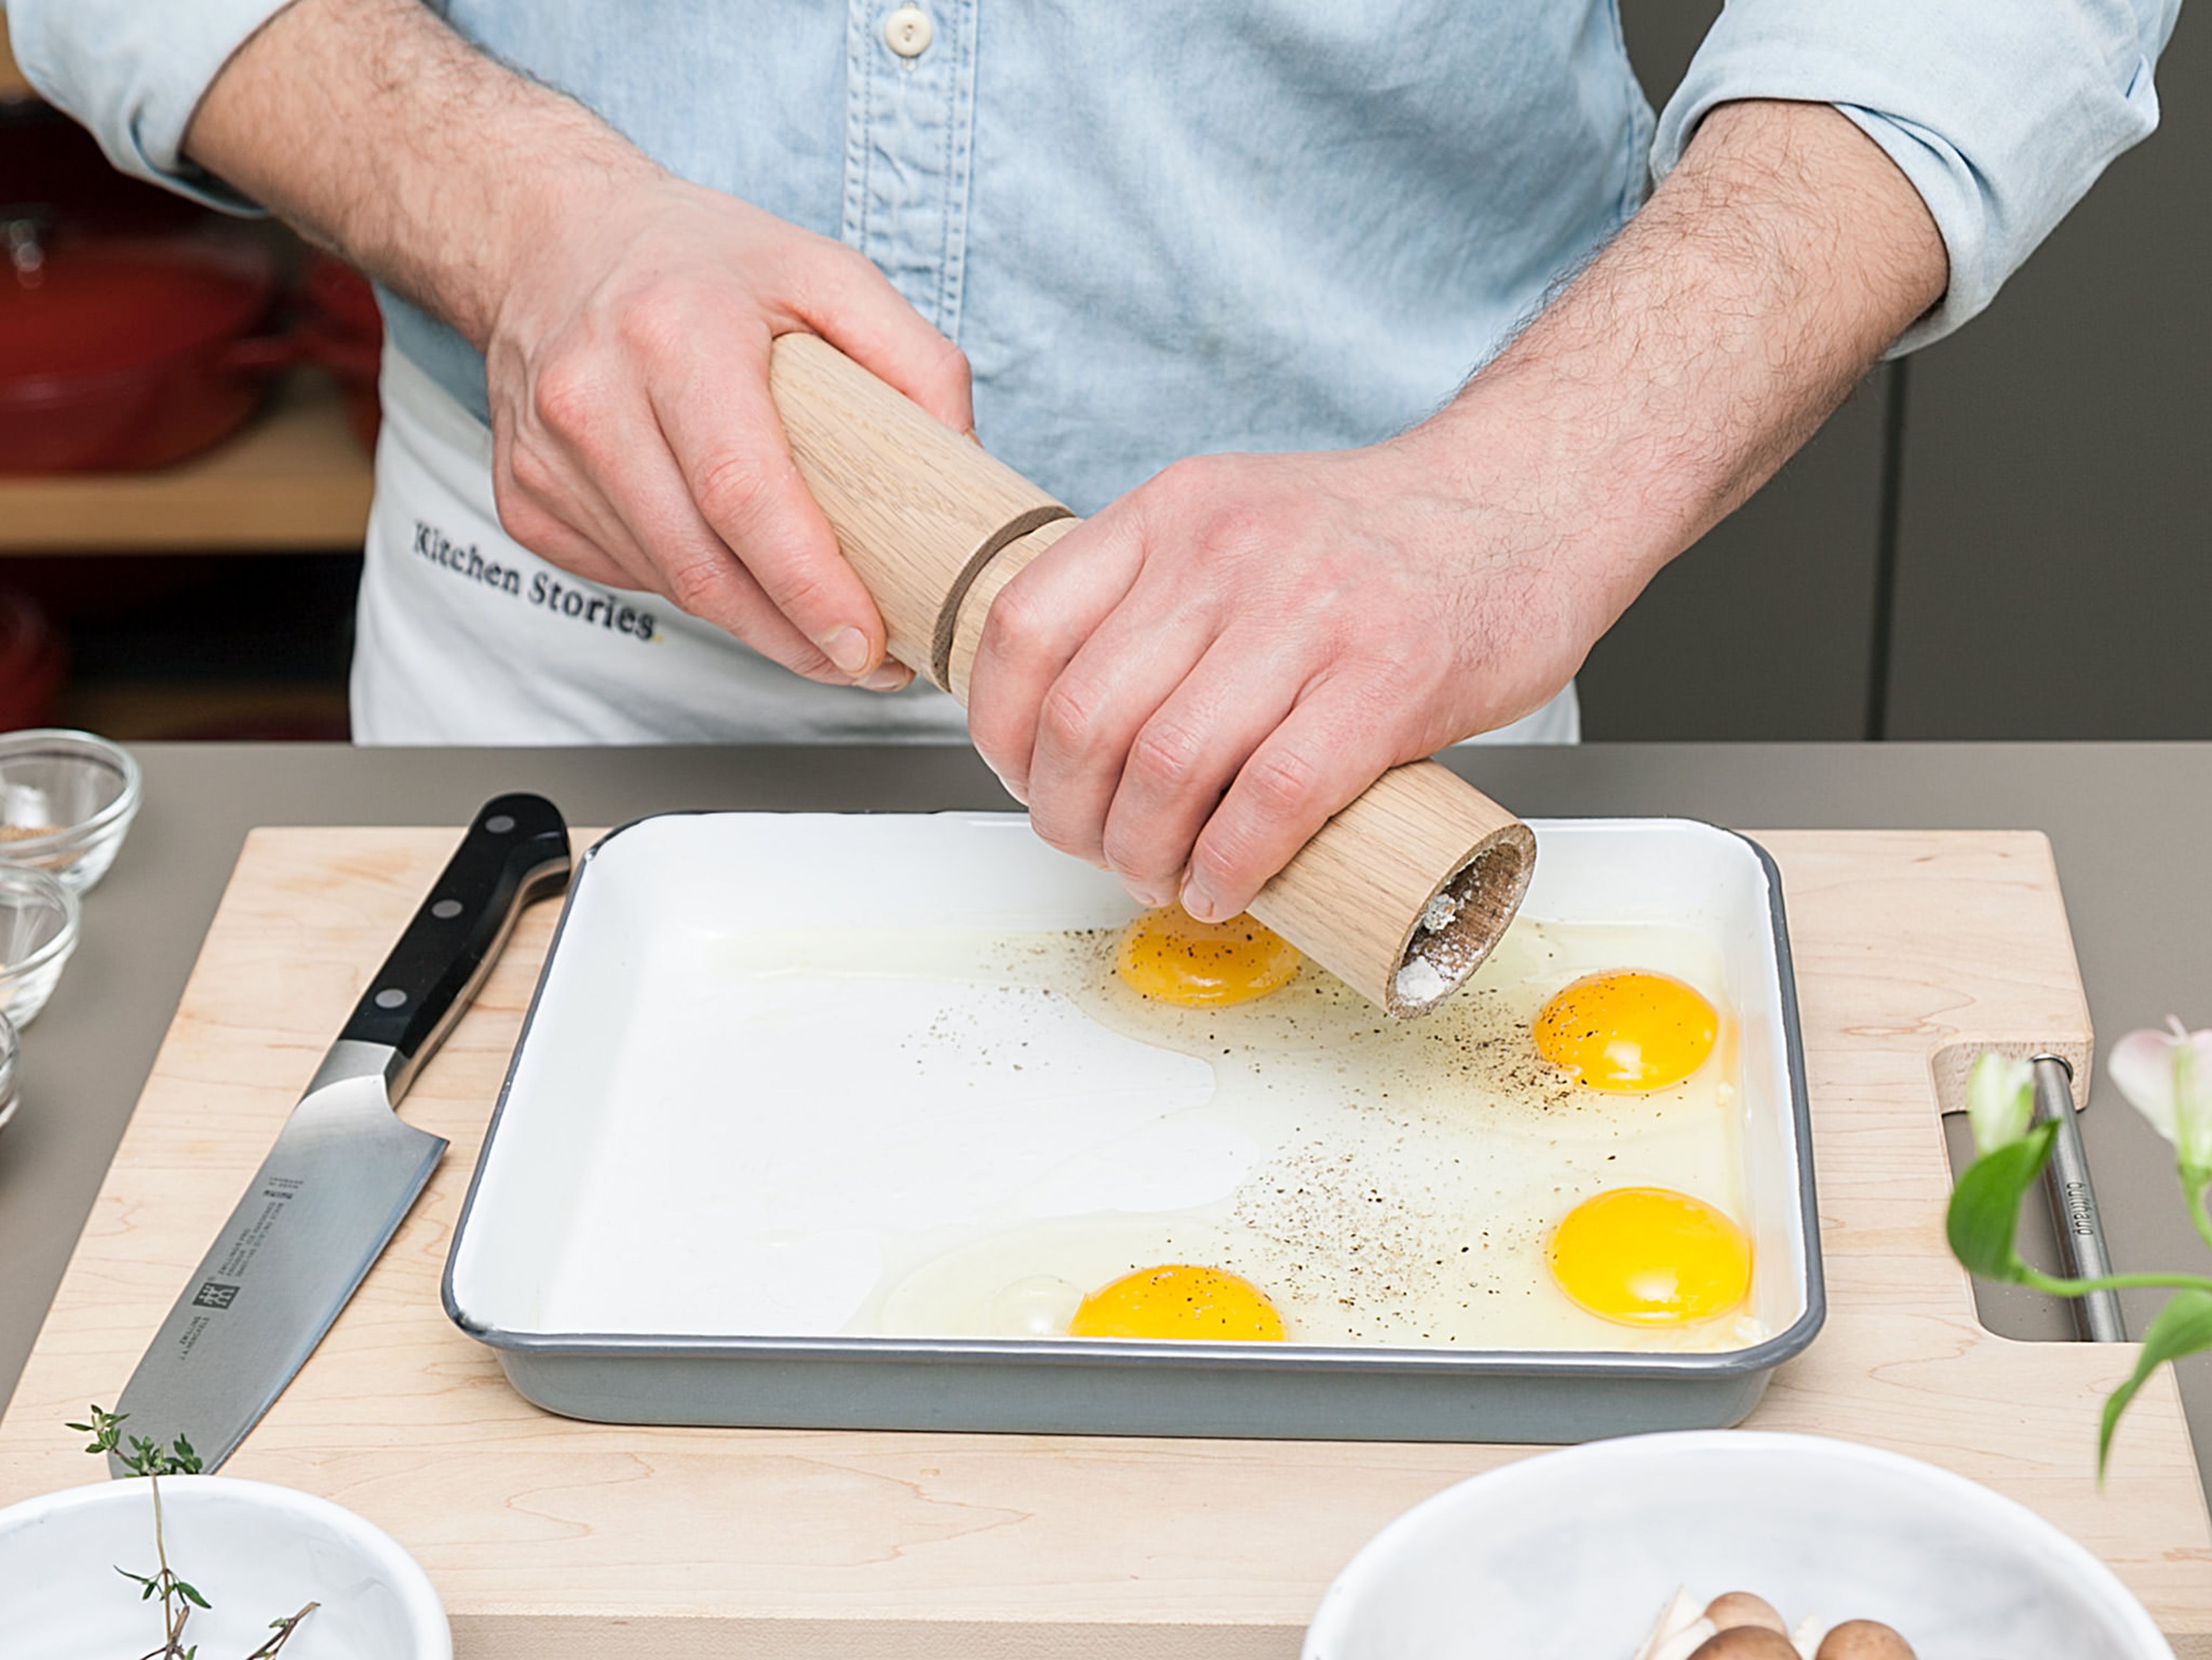 Backofen auf 200°C vorheizen. Auflaufform mit Butter einfetten. Eier einzeln in die Form geben und mit Salz und Pfeffer würzen. Sahne und Parmesan in eine kleine Schüssel geben, vermengen und anschließend über die Eier träufeln. Im Backofen ca. 10 - 12 Min. backen.